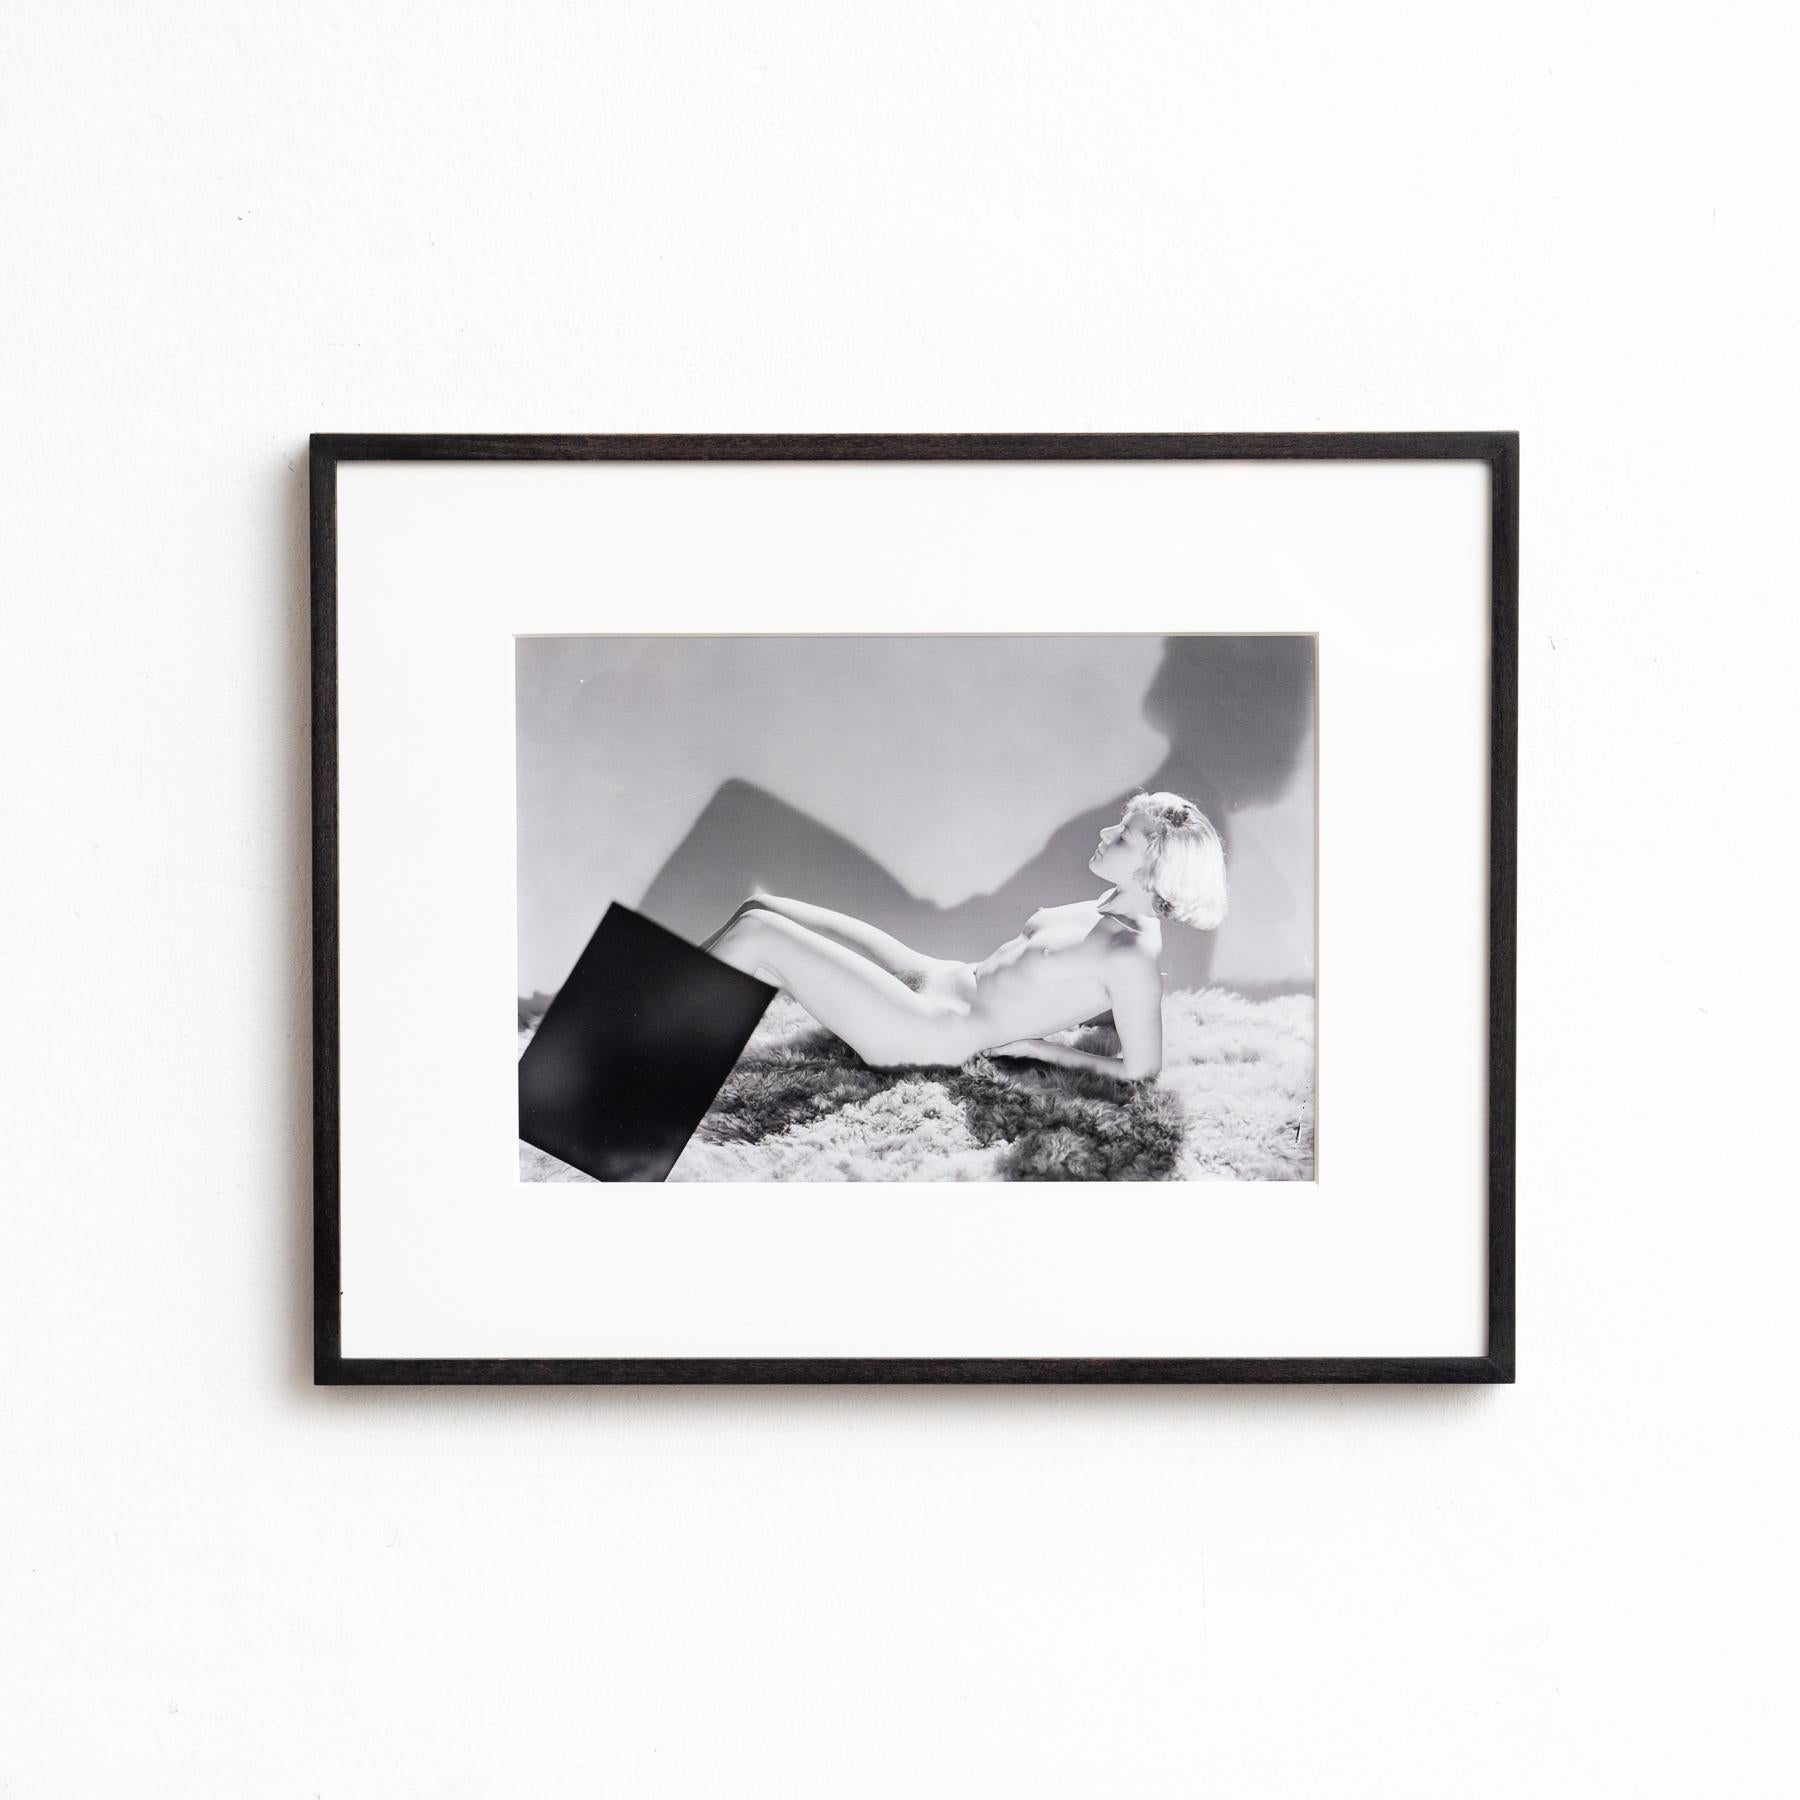 Dora Maar Photographie encadrée en noir et blanc éditée par le Centre Pompidou

Encadré en bois laqué noir

Édité en 2019.

En état d'origine, avec de légères usures dues à l'âge et à l'utilisation, préservant une belle patine.